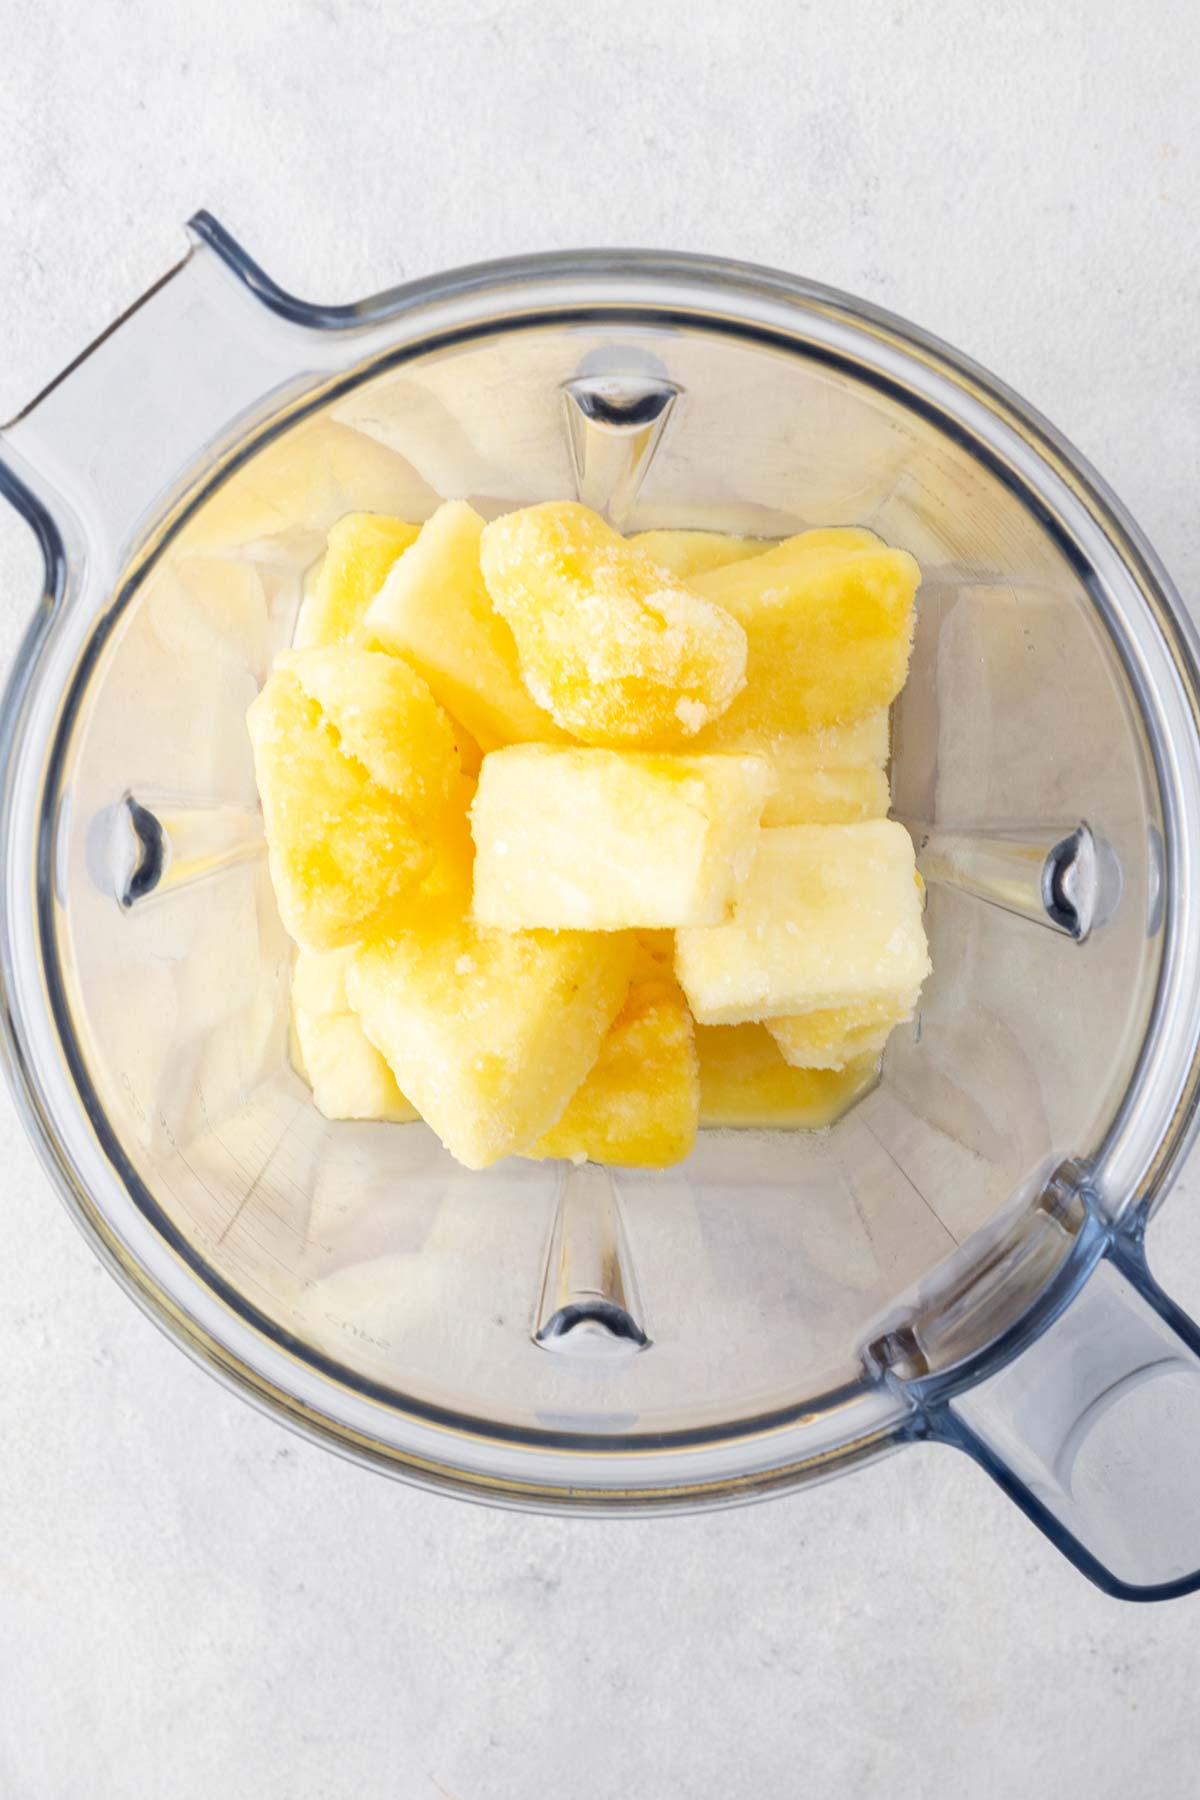 Pineapple smoothie ingredients in a blender.